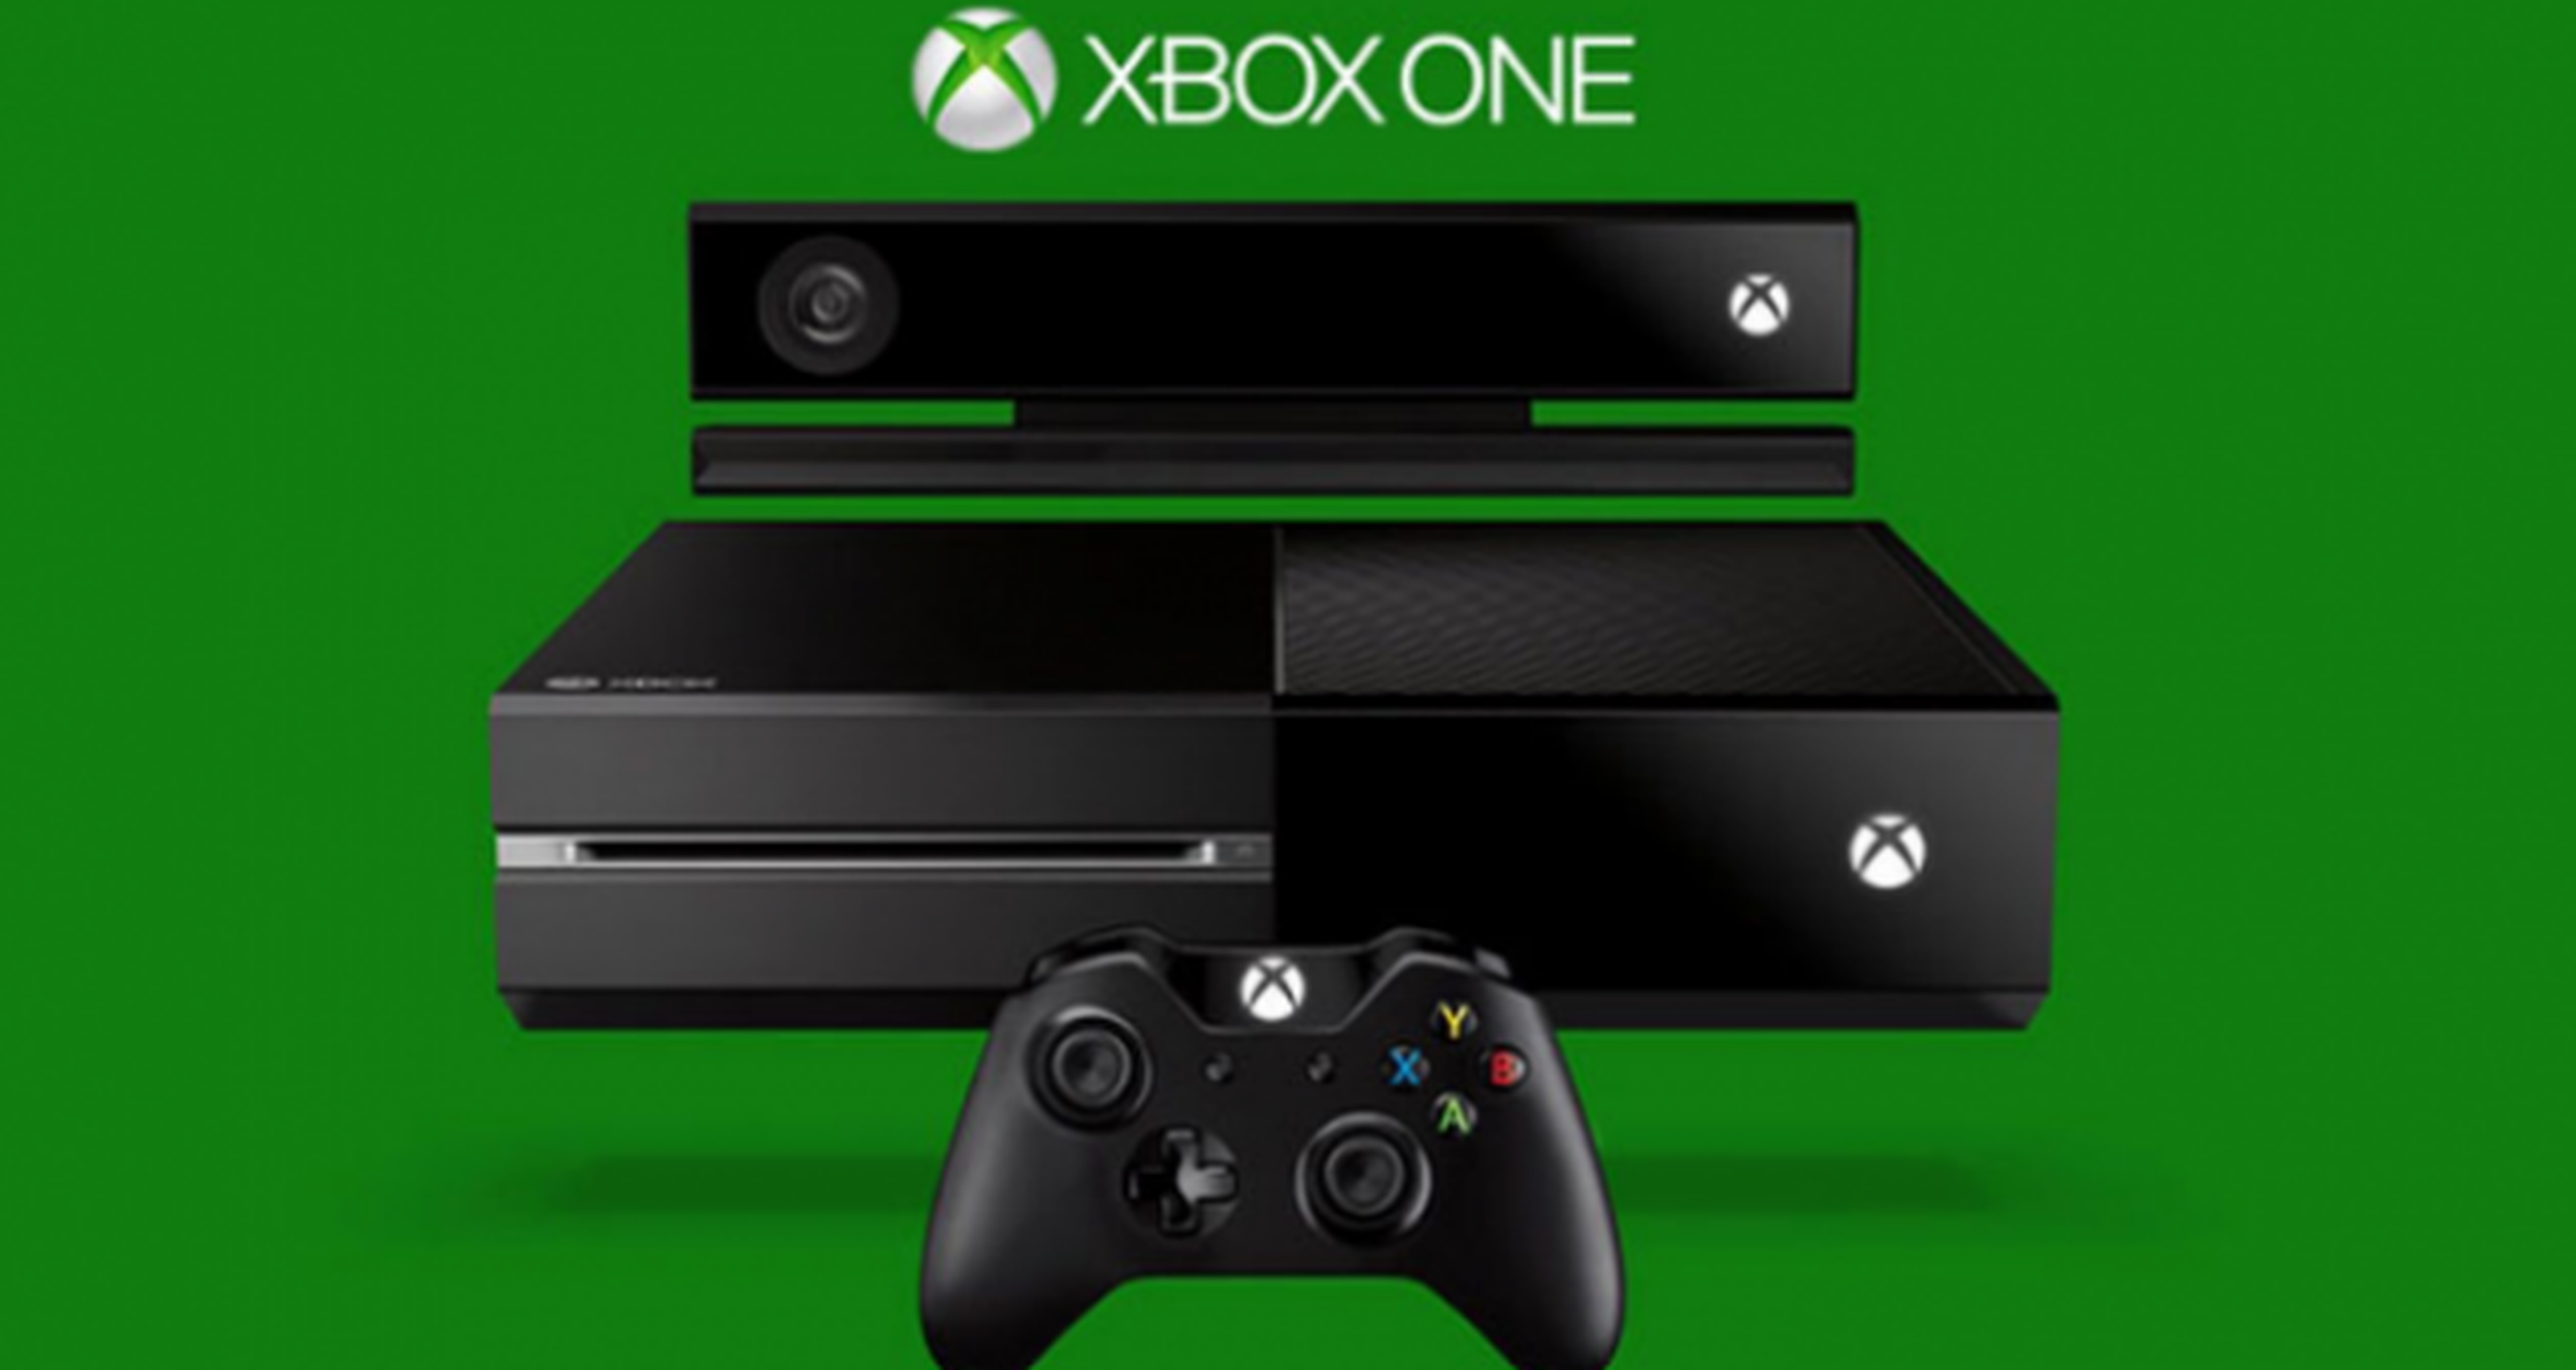 Pronto se podrán compartir imágenes con Xbox One